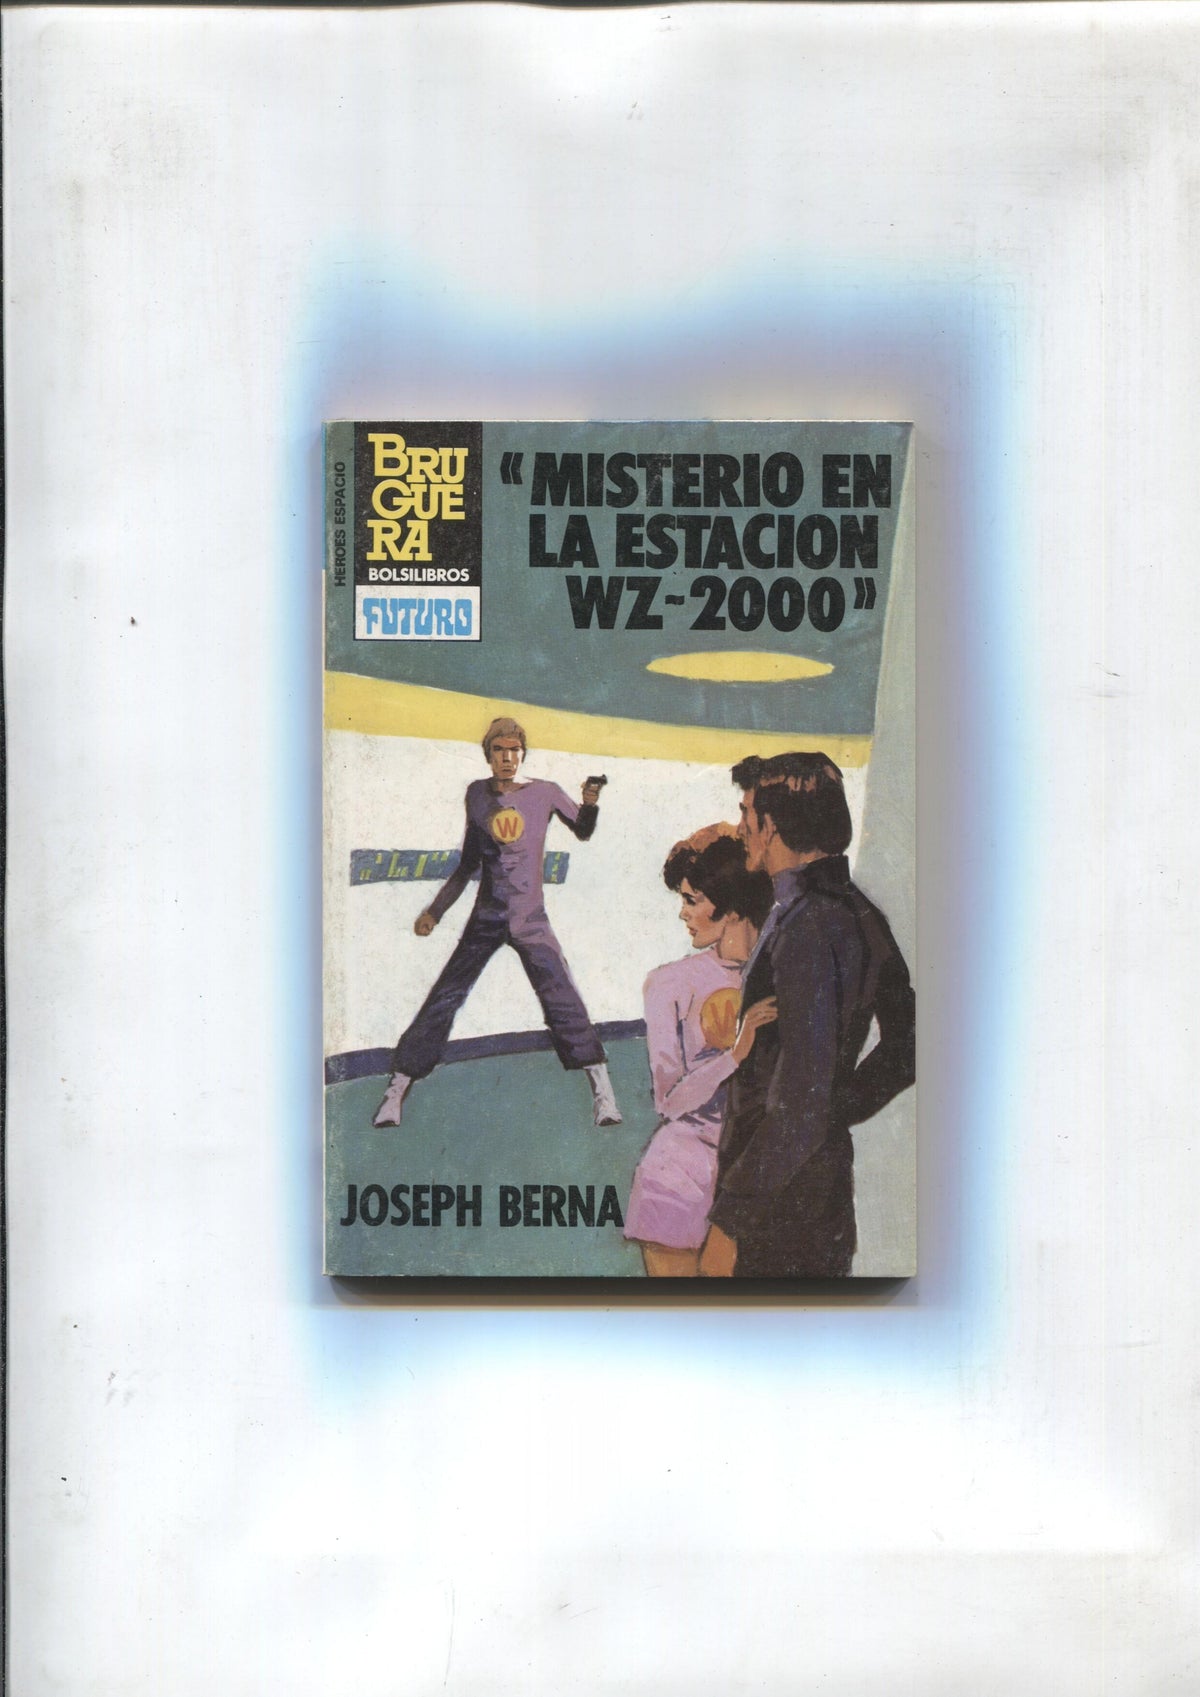 Heroes del Espacio numero 218: Misterio en la estacion WZ-2000